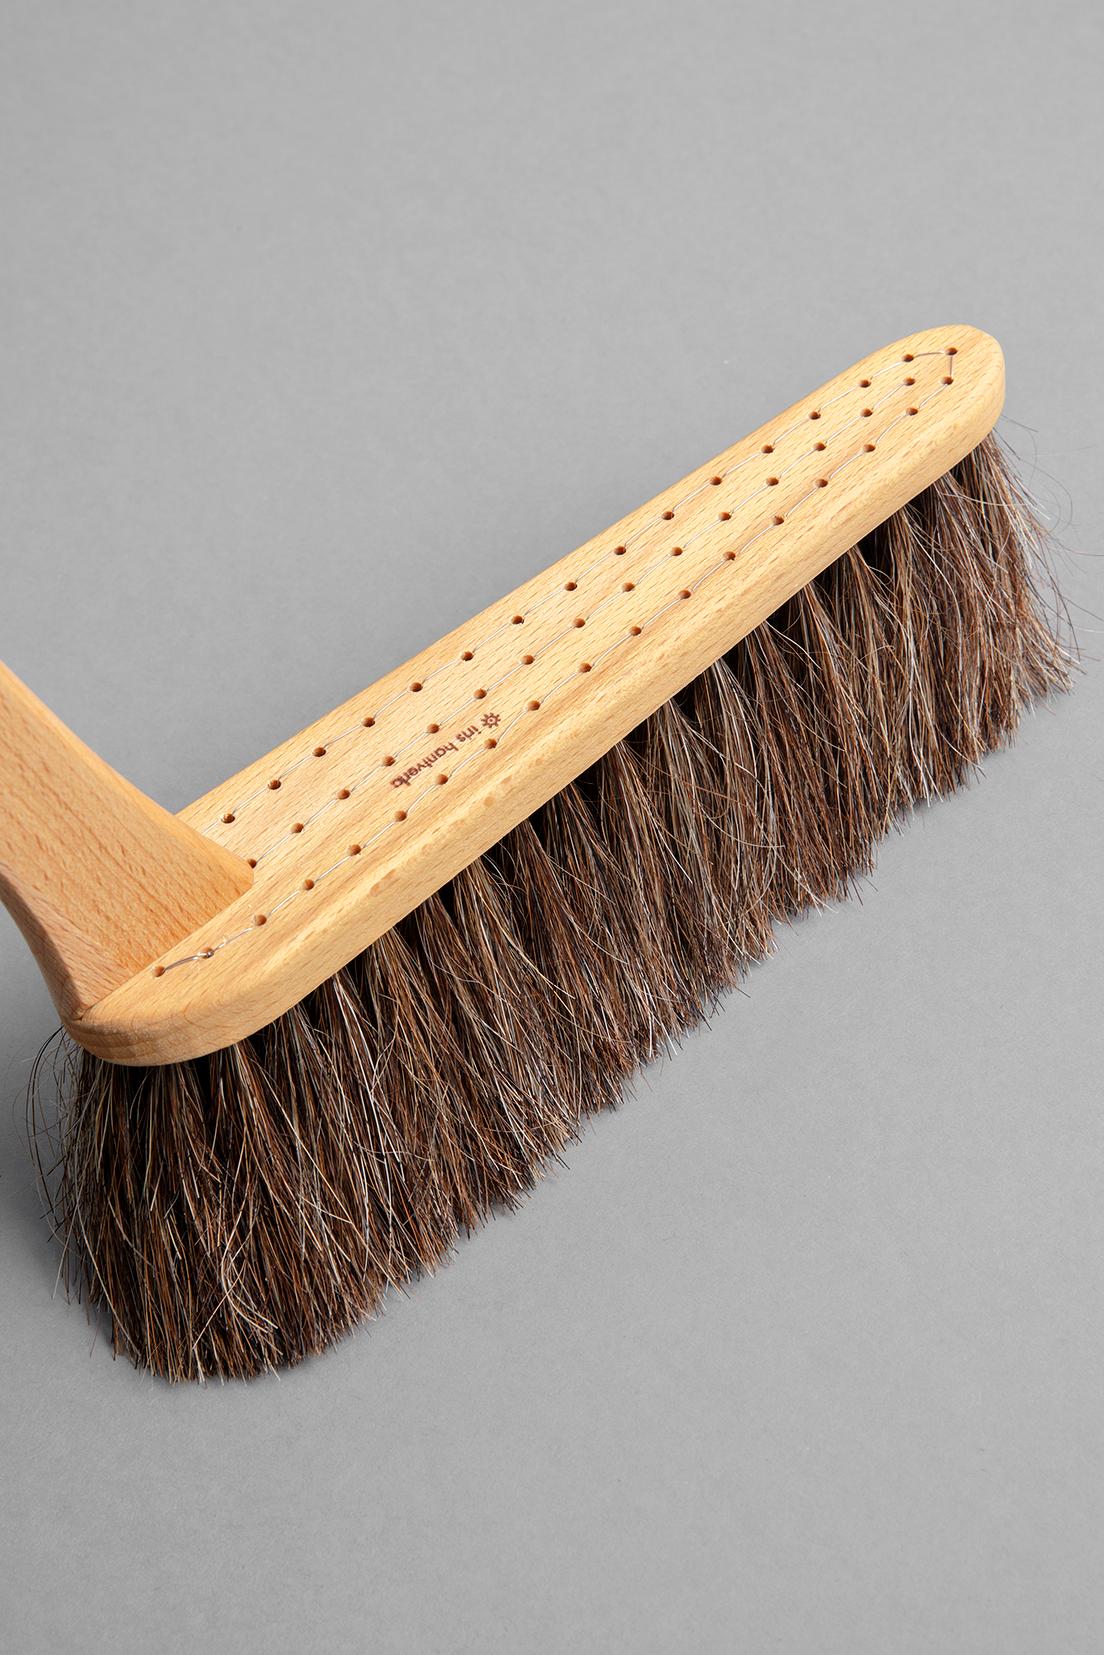 耐嚼的马毛可以清洁细小的灰尘而不损坏地板。 由于发束是一根一根的手工种植在带孔的树体上，因此头发不易脱落，可以舒适地永远使用，这很有吸引力。